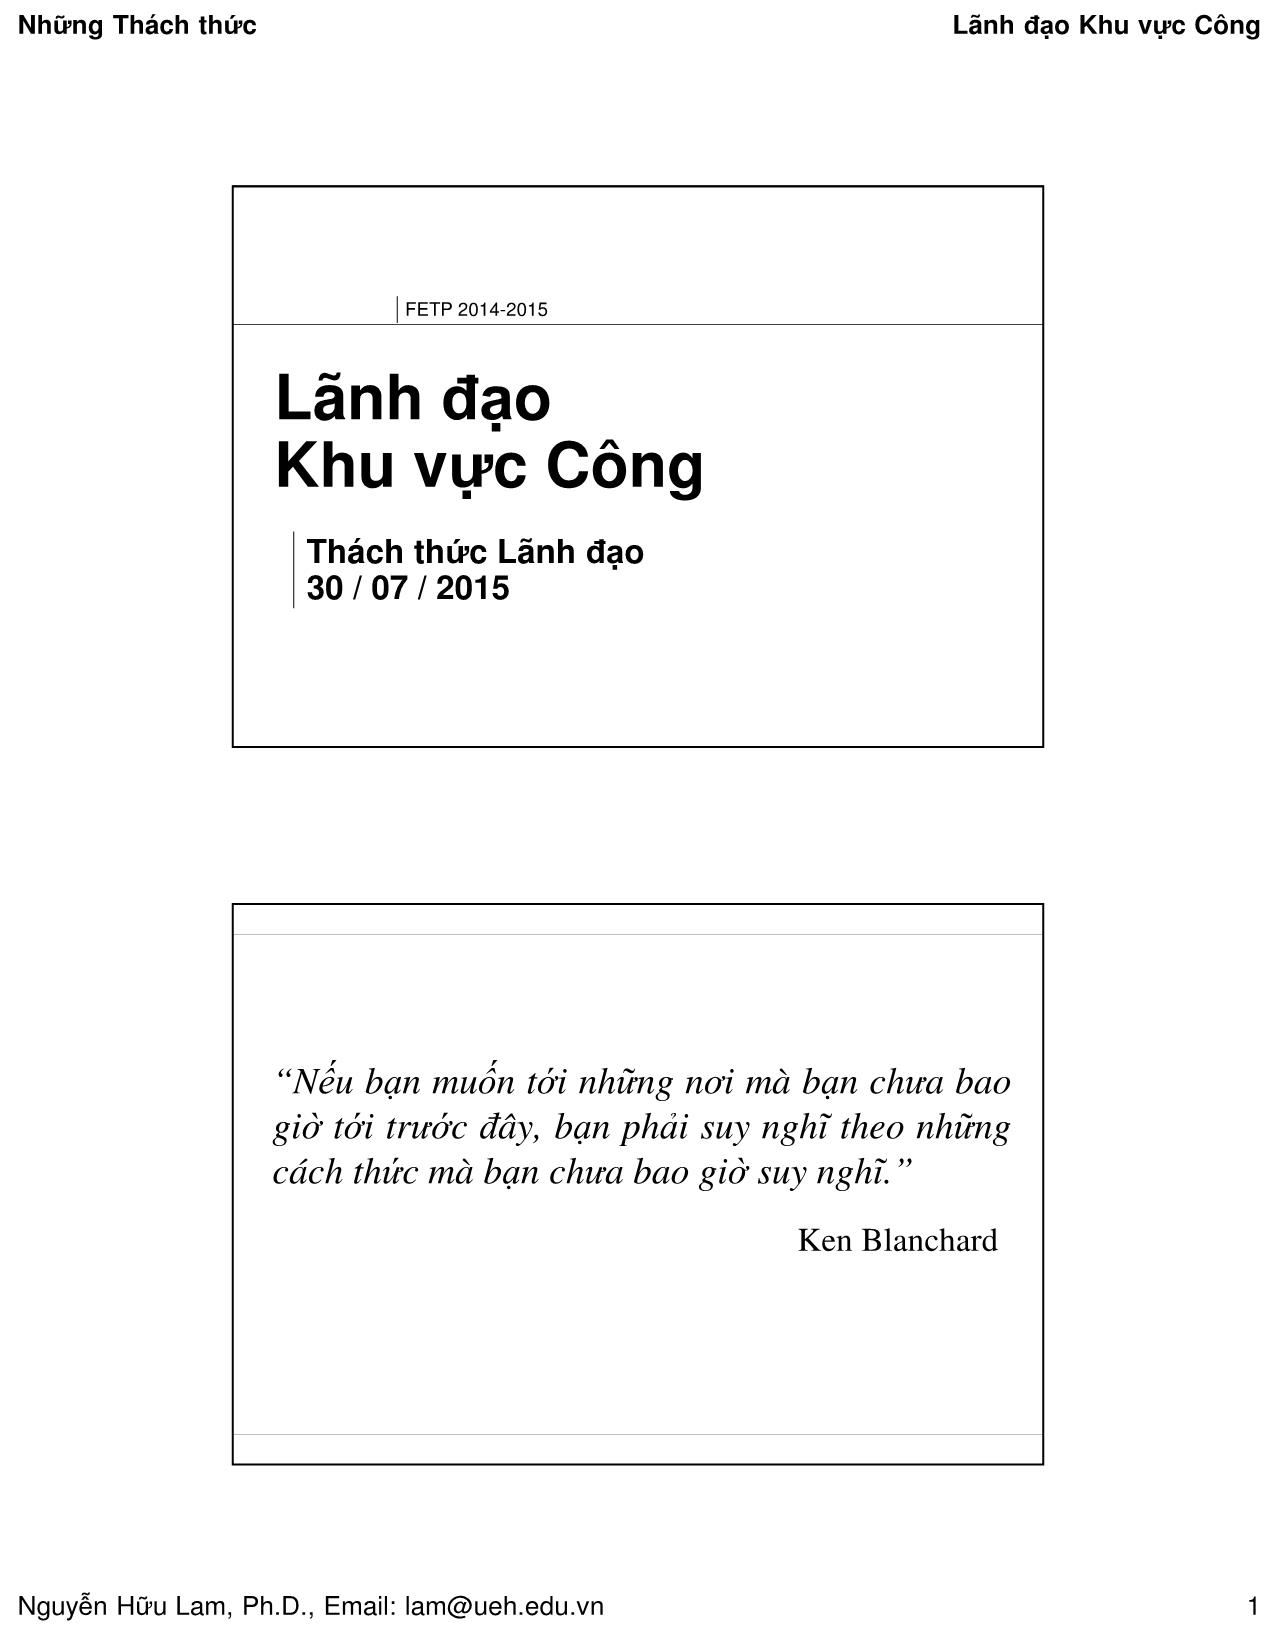 Bài giảng Quản lý công - Lãnh đạo khu vực công - Nguyễn Hữu Lam trang 1